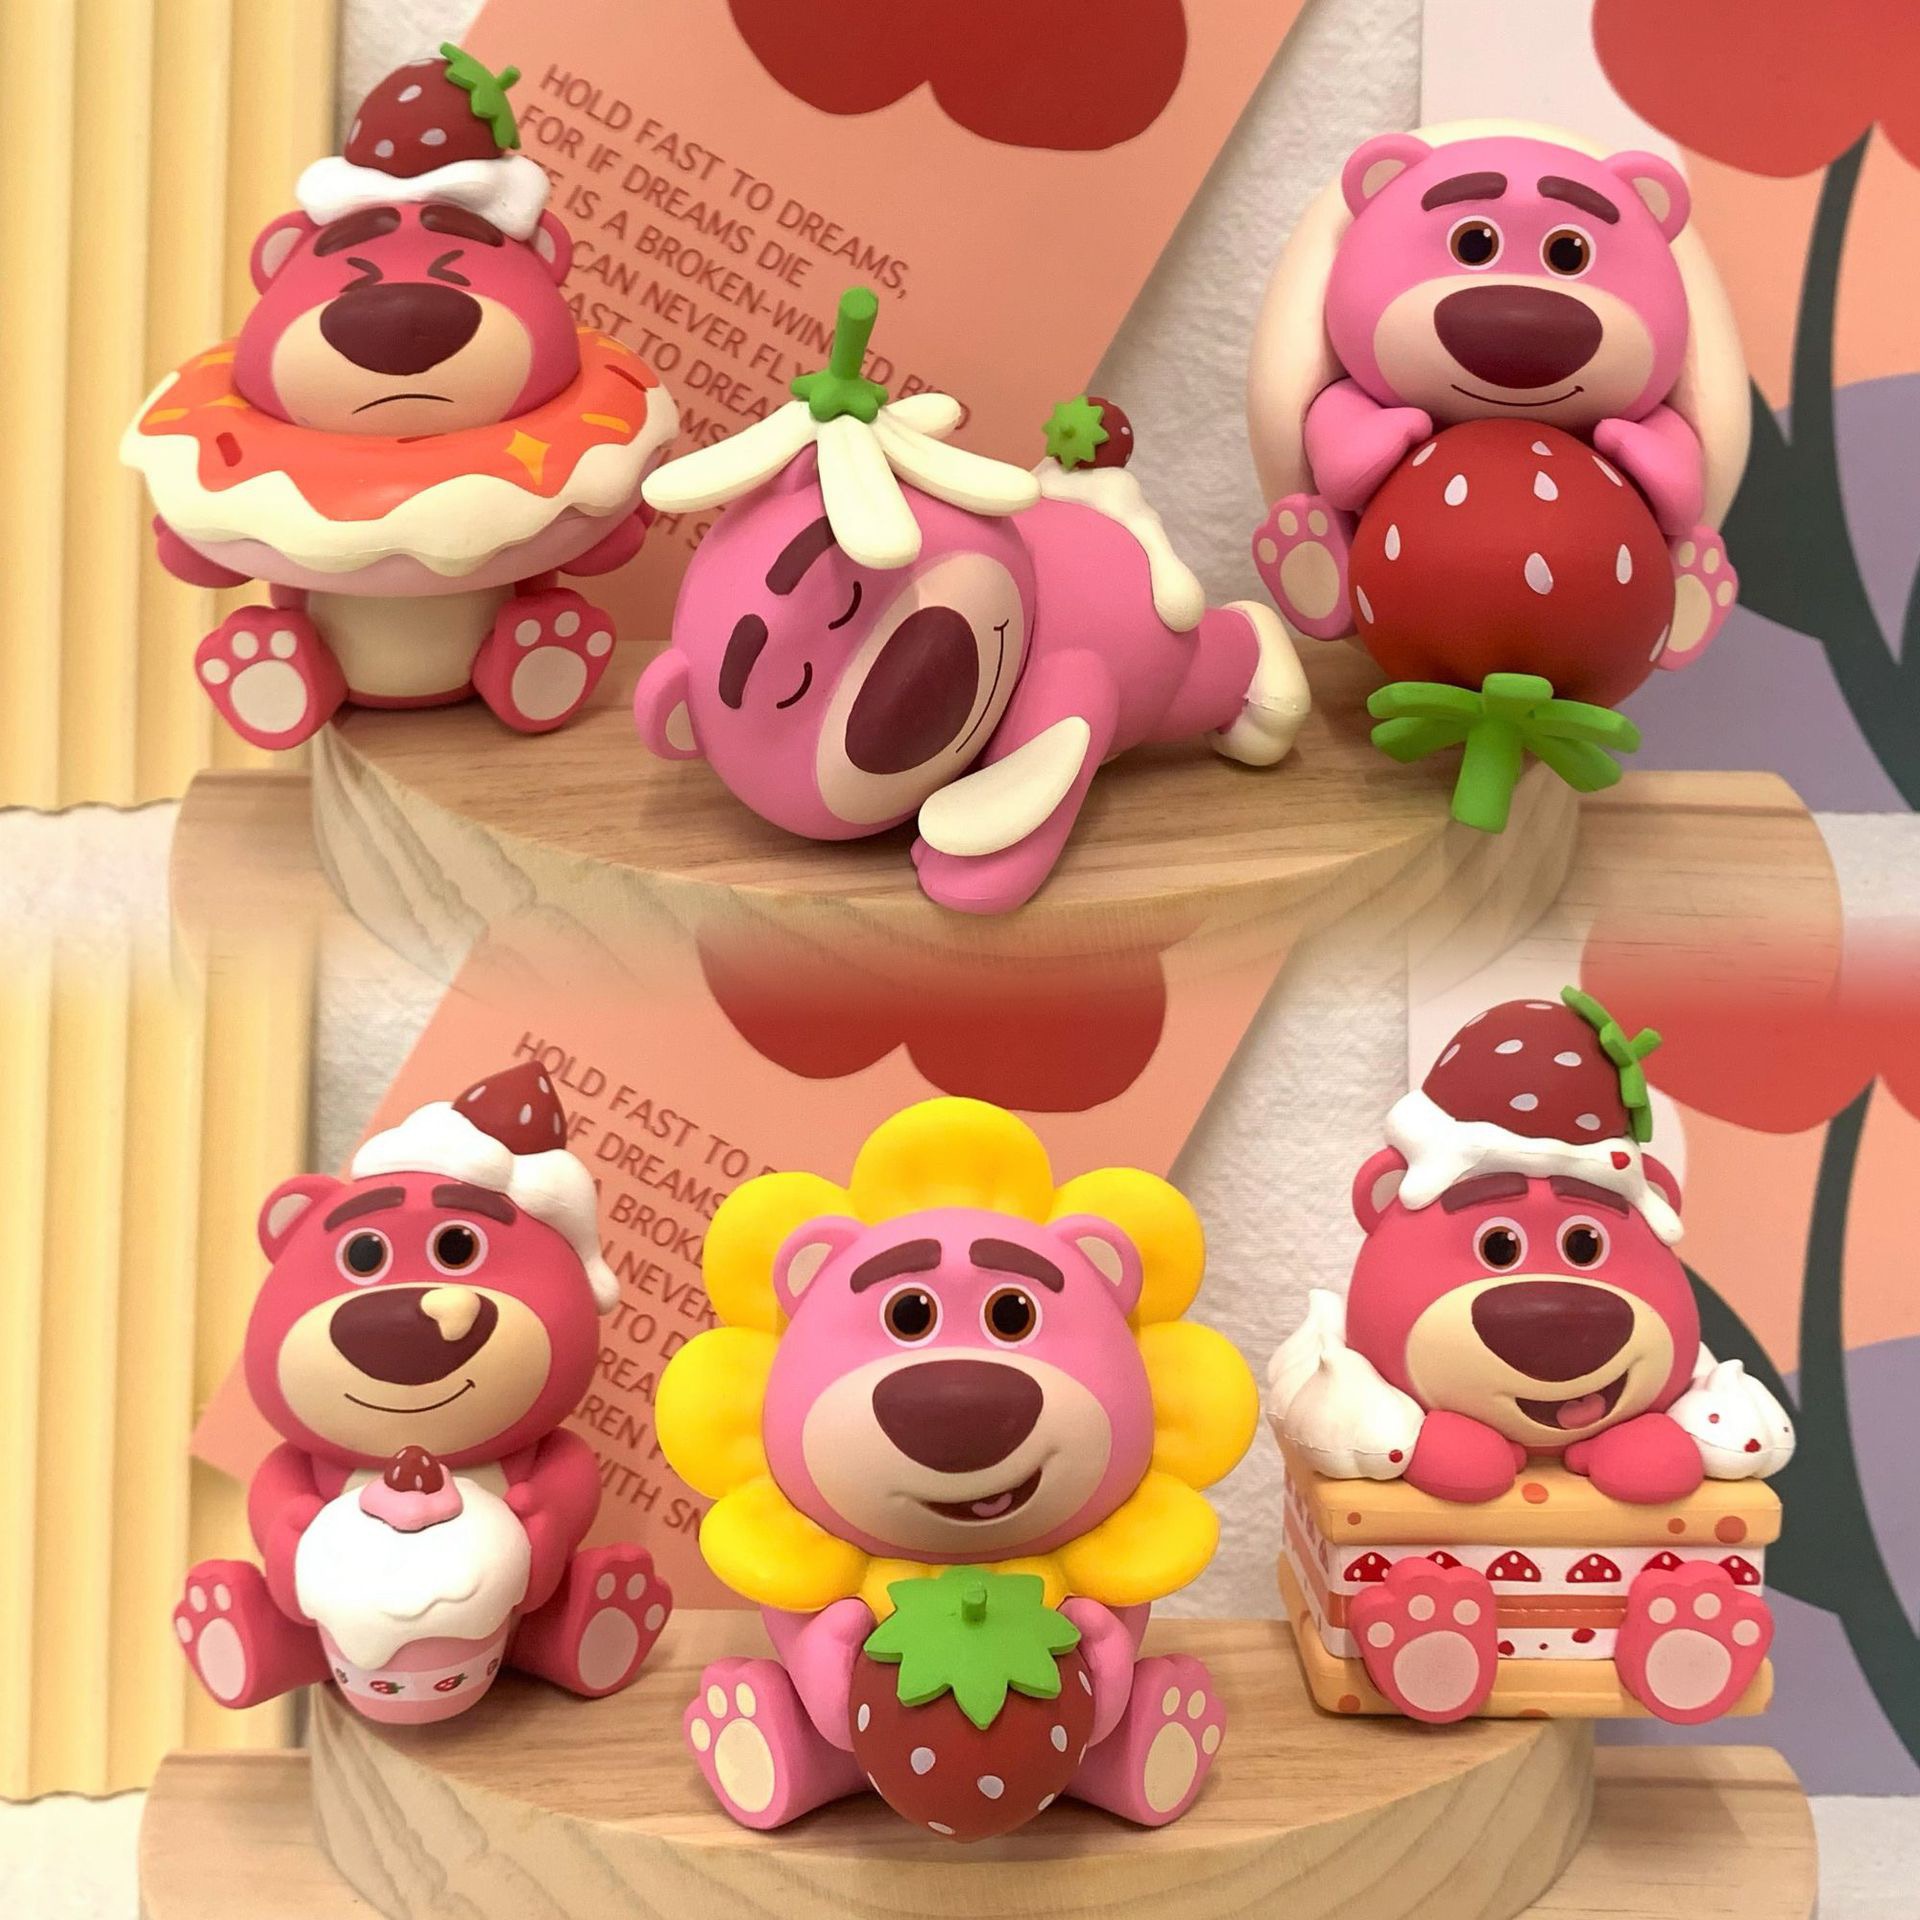 草莓熊甜品派对系列盲盒手办公仔桌面摆件玩具女生礼物可爱小摆件